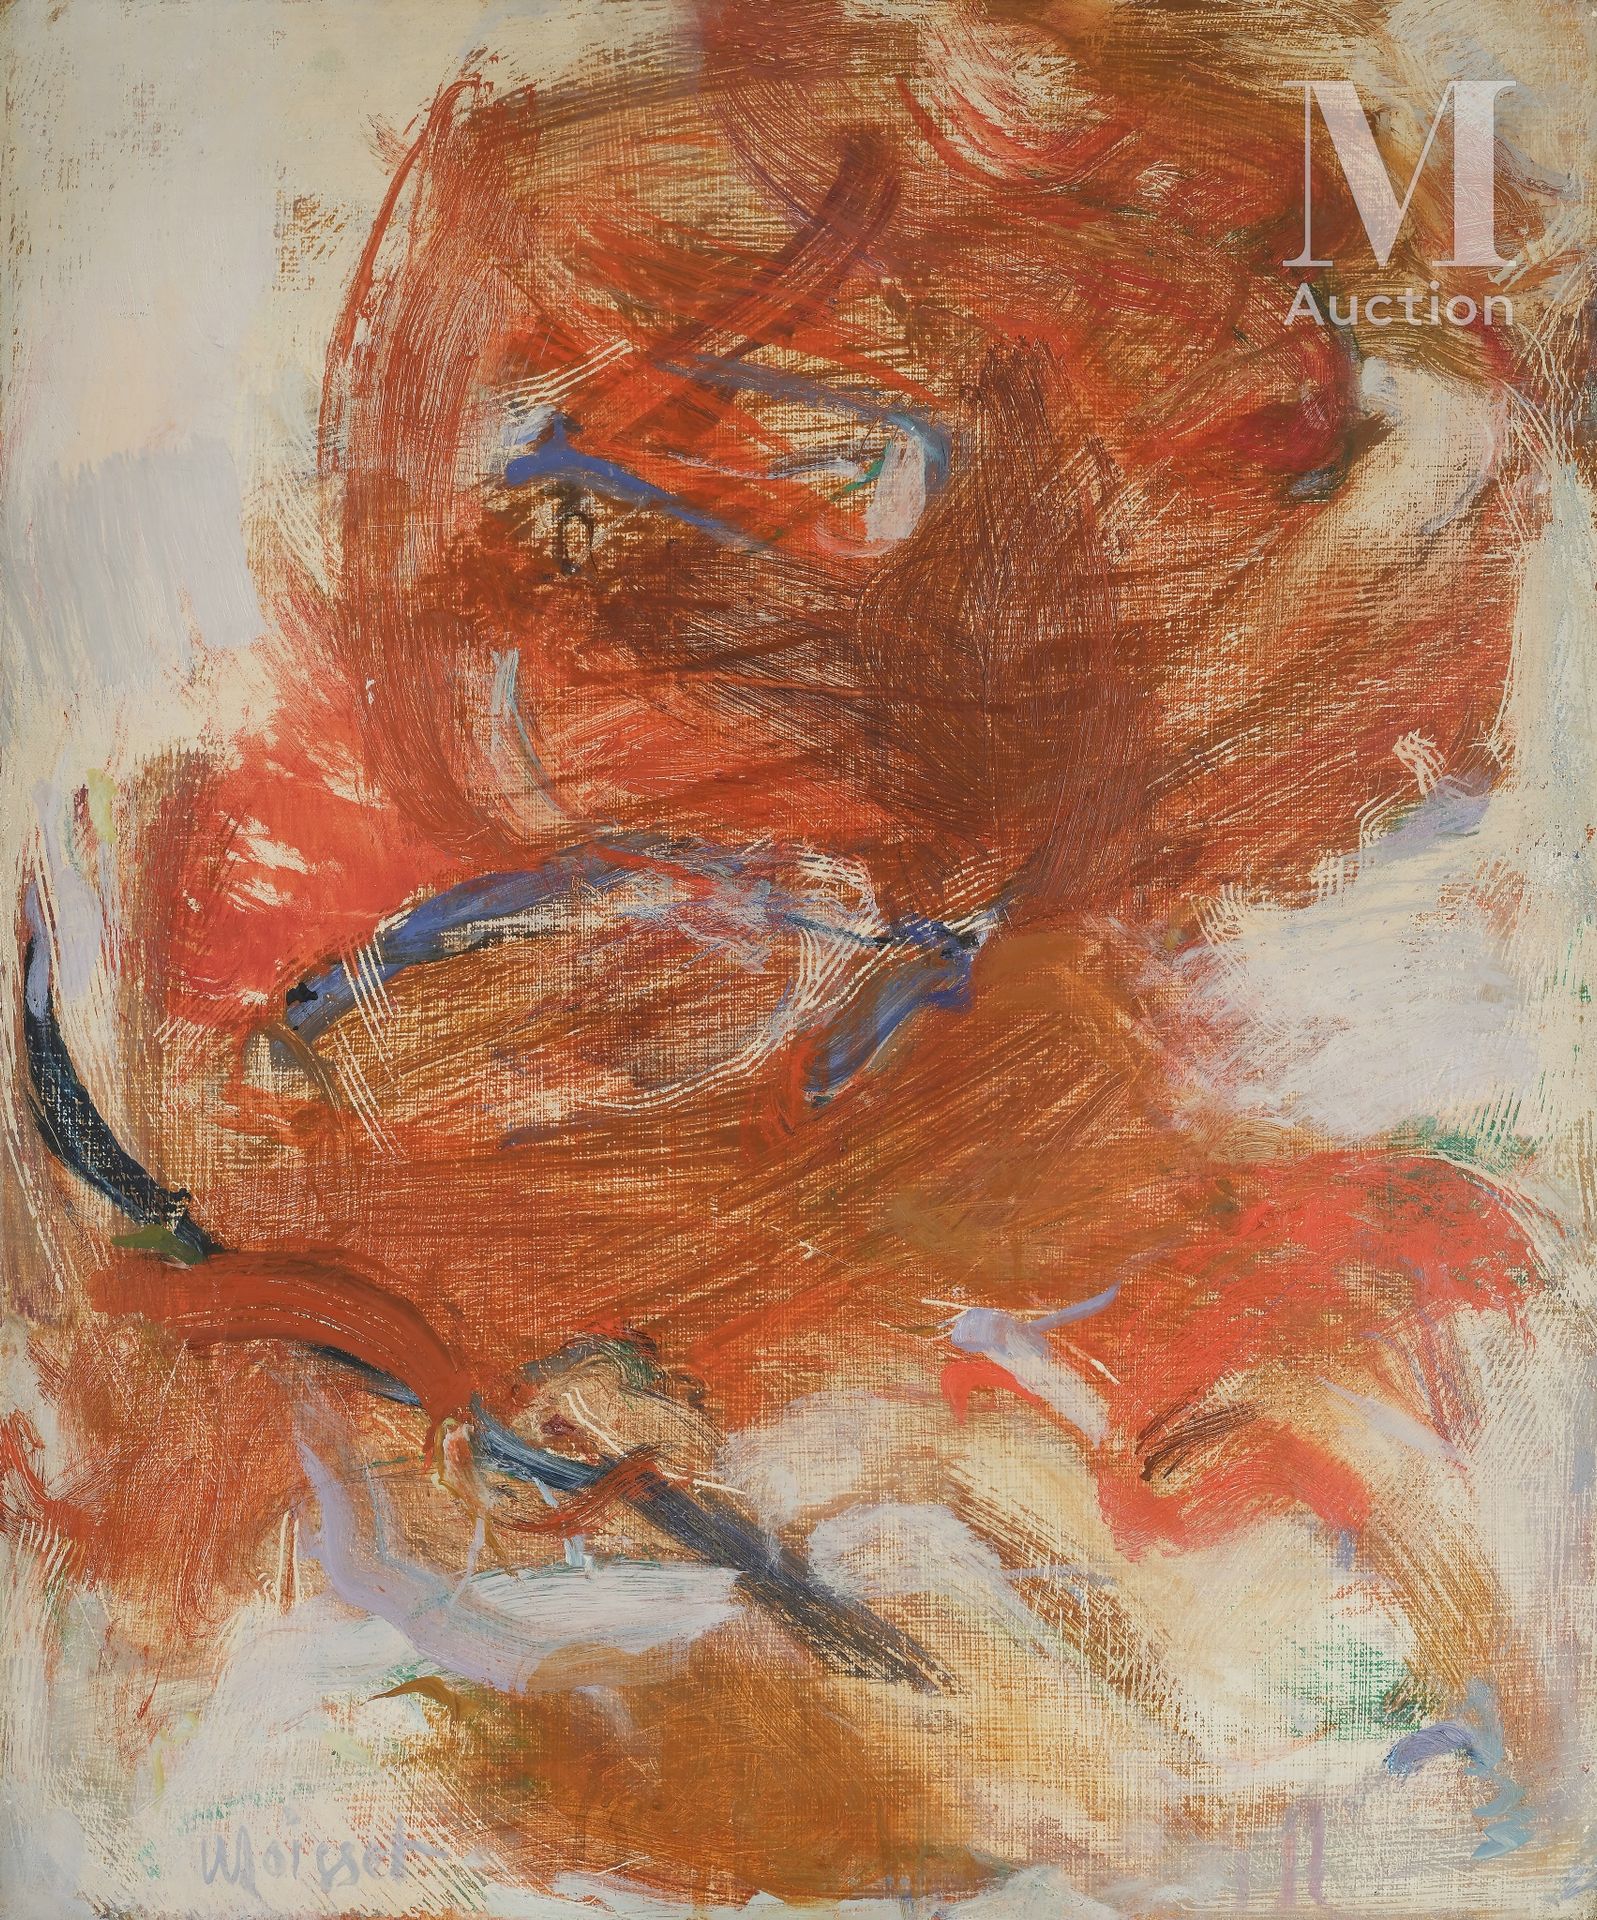 Raymond MOISSET (1906-1994) Herbstlicher Wirbelwind, 1962

Öl auf Leinwand, unte&hellip;